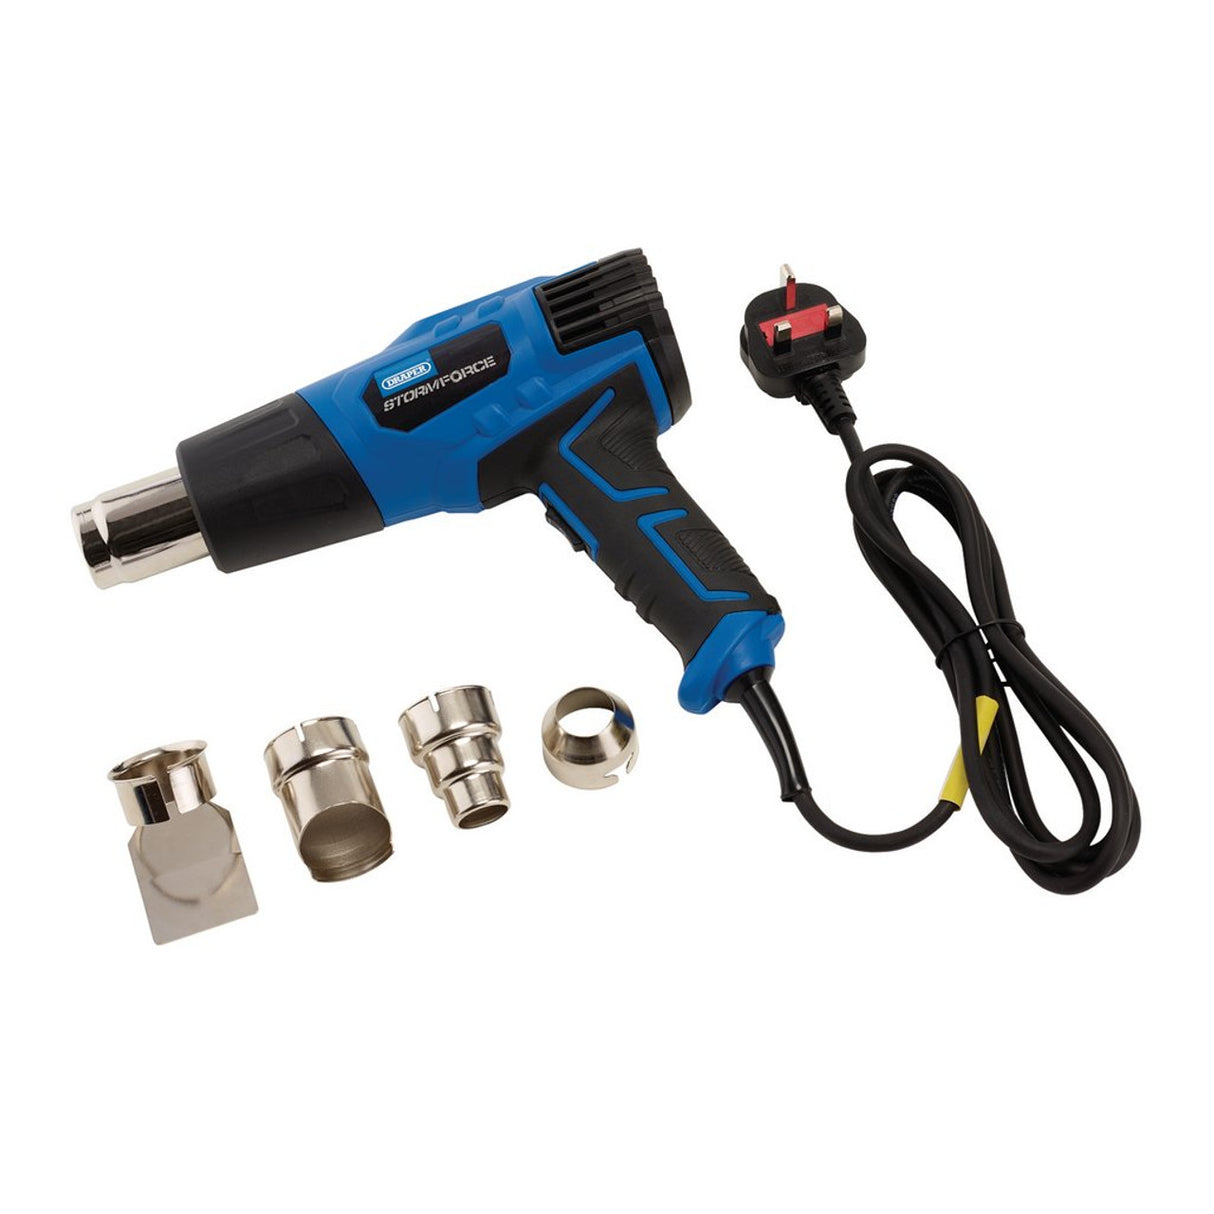 Draper Tools Storm Force® 230V Heat Gun, 2000W